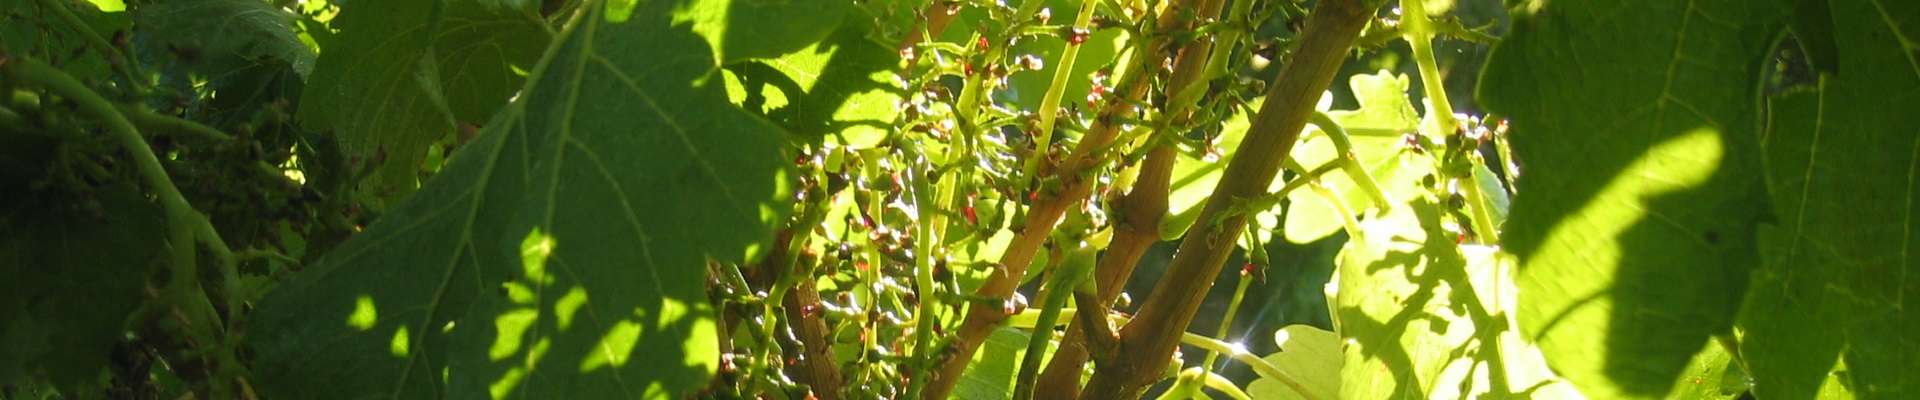 Harvested Vine - Ackland Harvesting